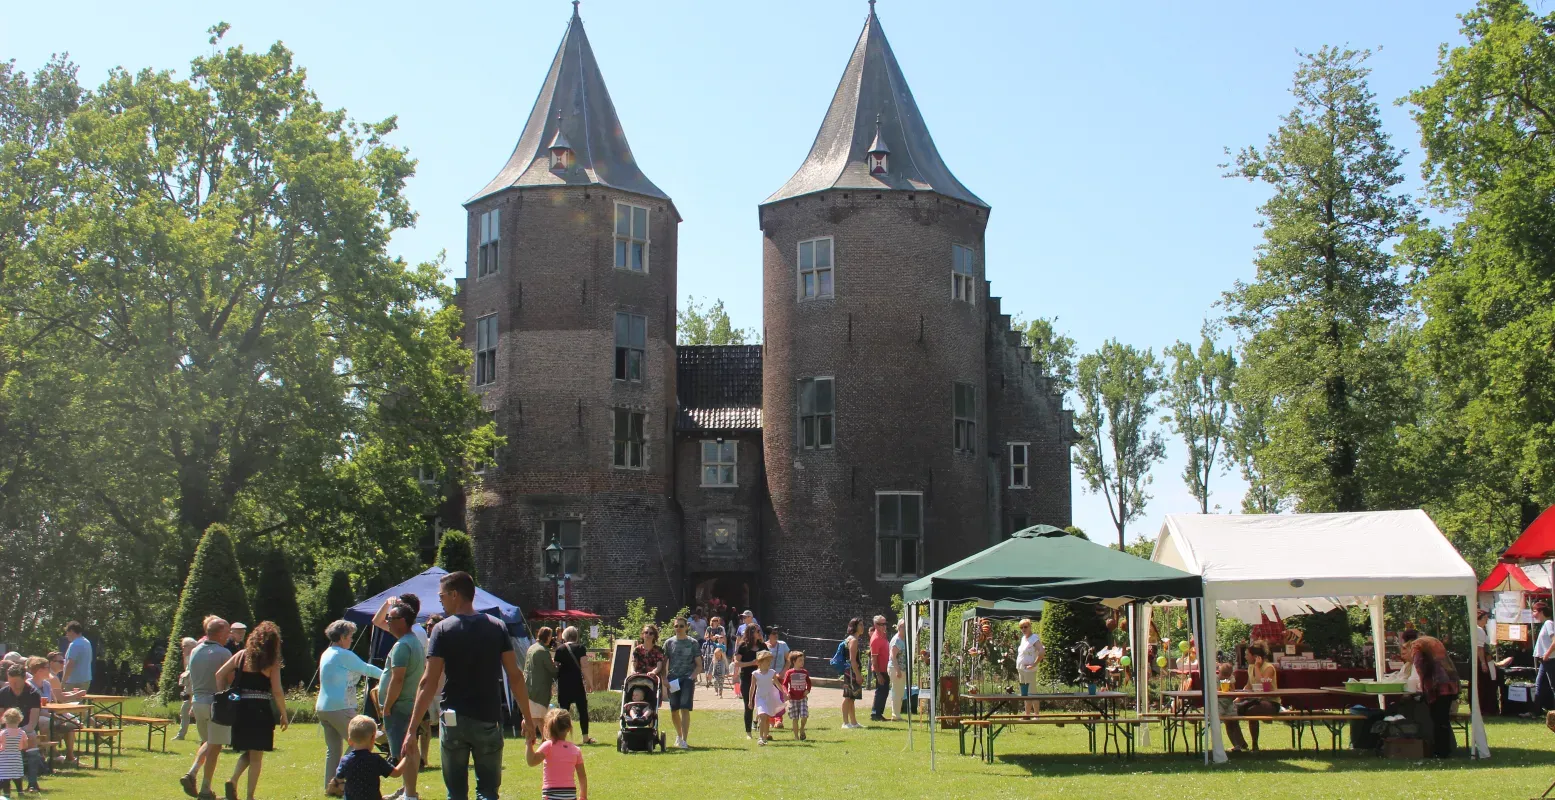 Mooie kastelen, fascinerende verhalen en een goede sfeer tijdens het Weekend van het Kasteel! Foto: Astrid Bouman